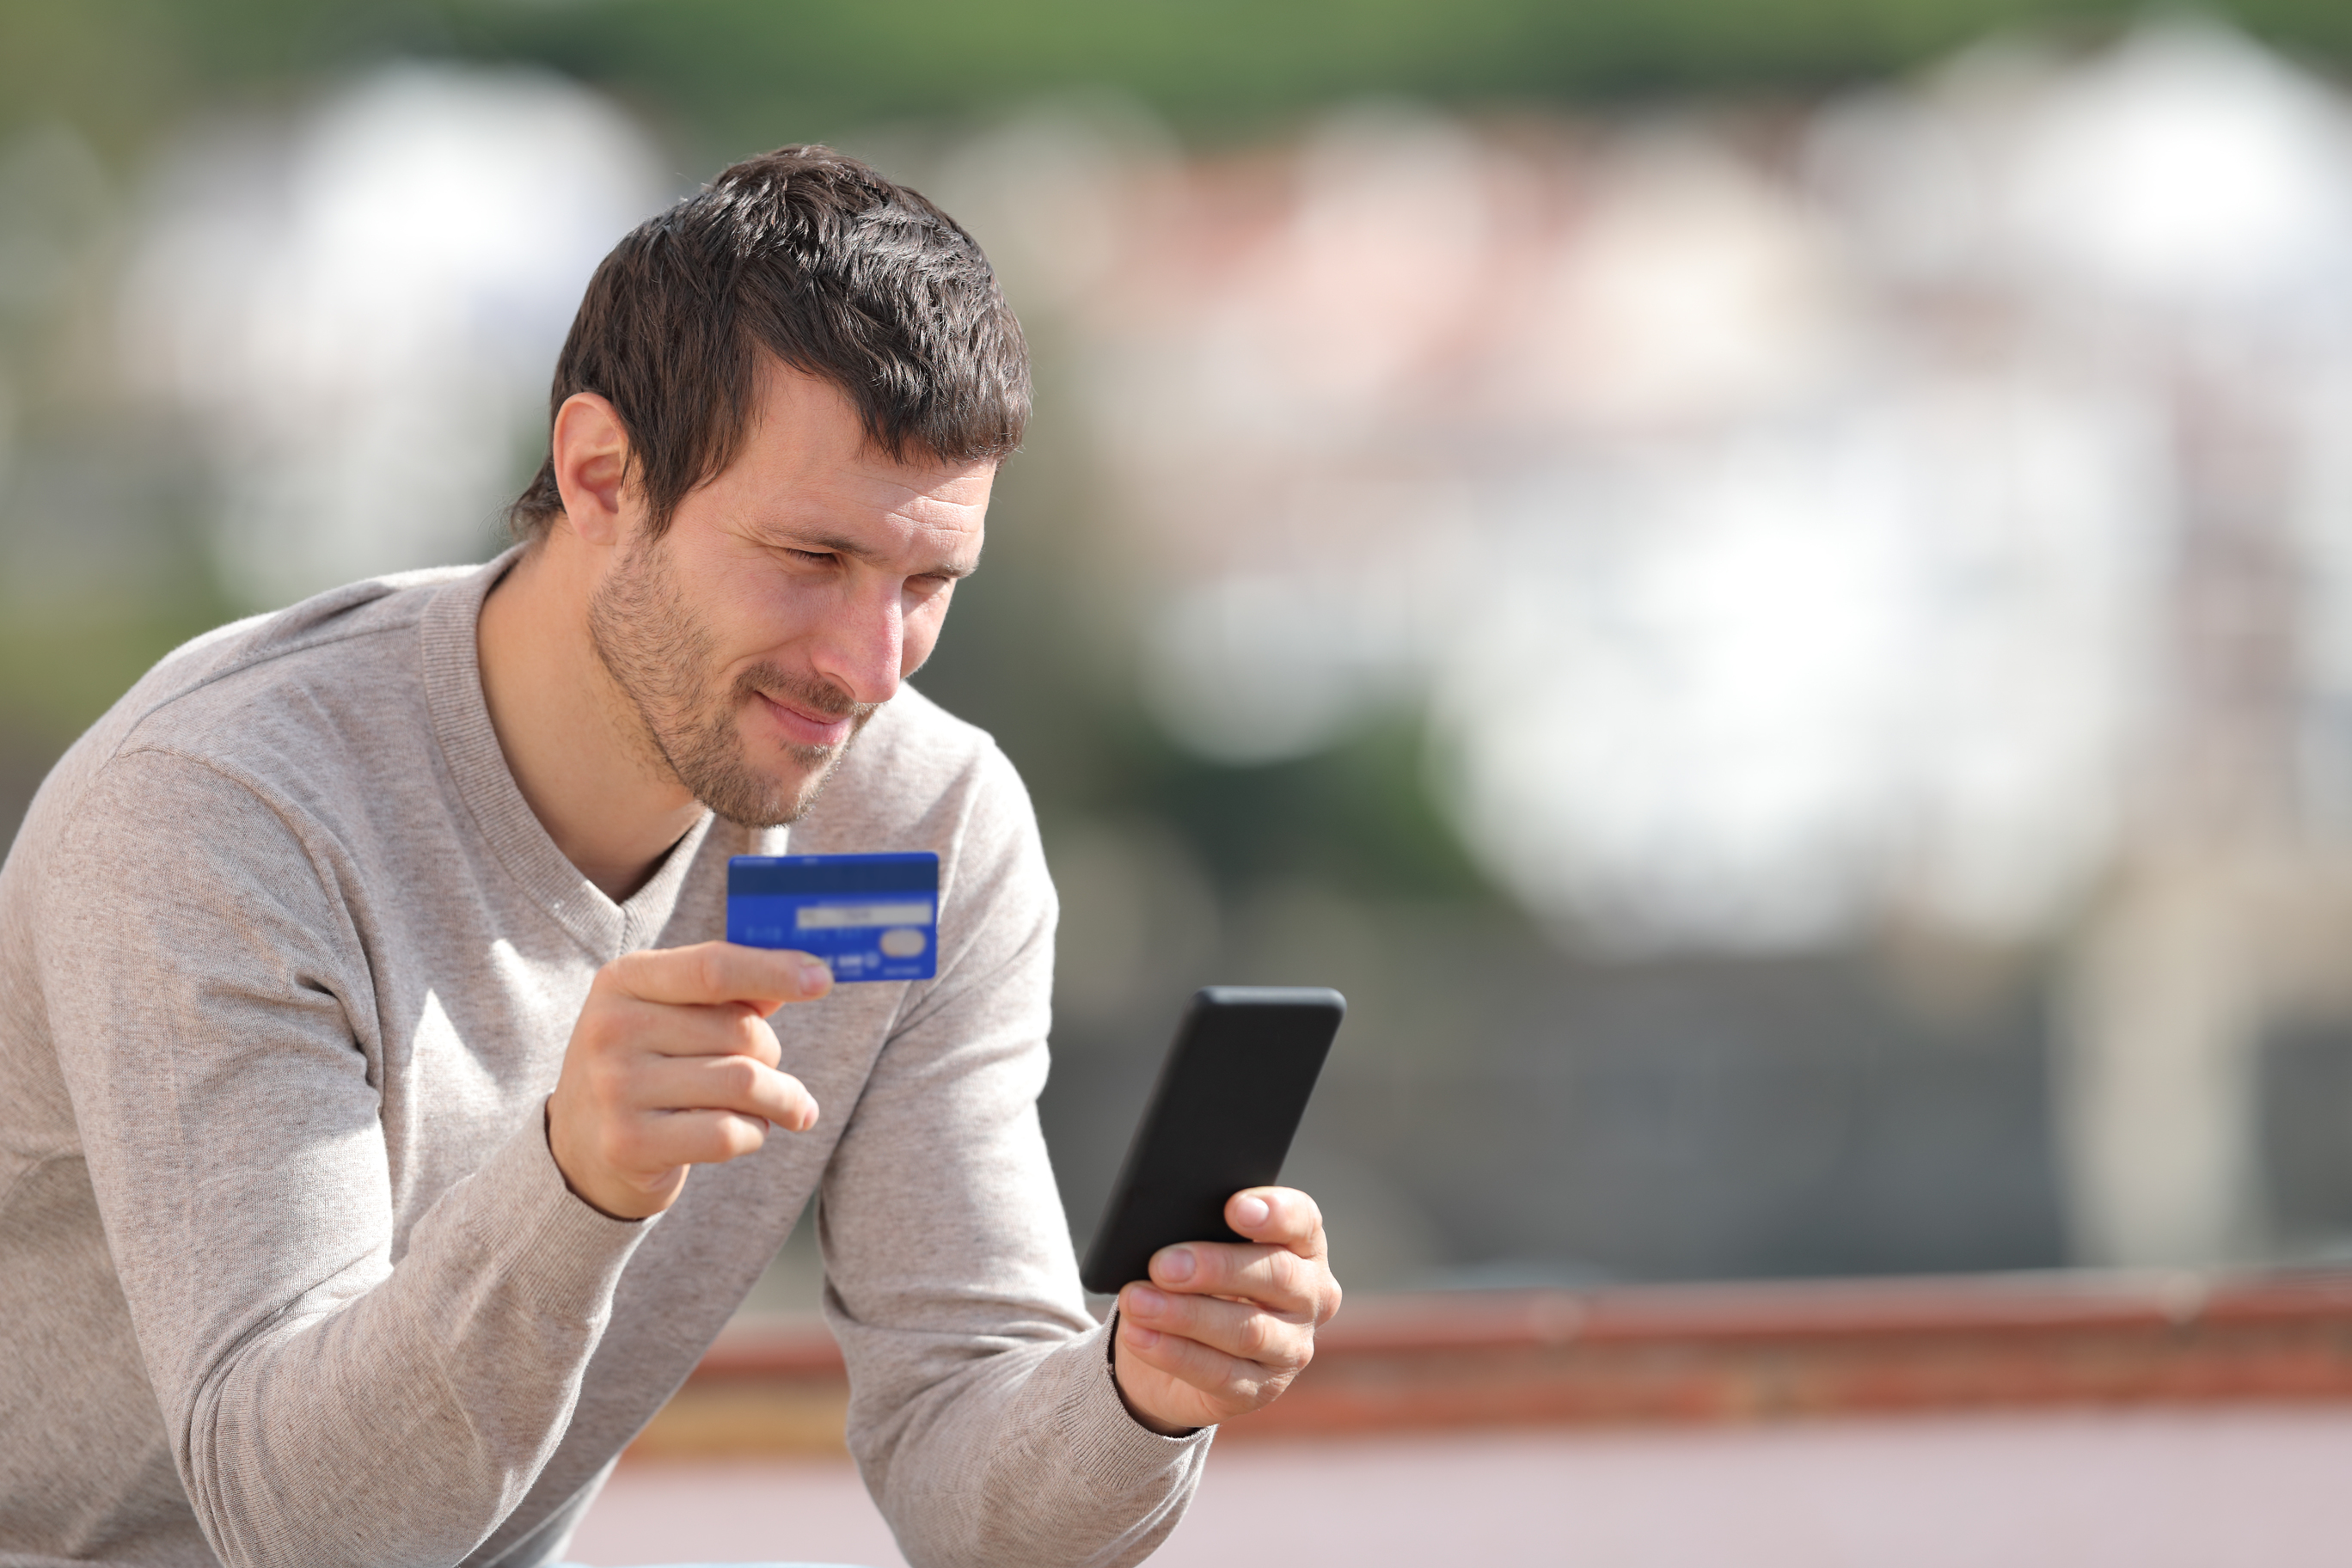 Muž držící mobil a kreditku